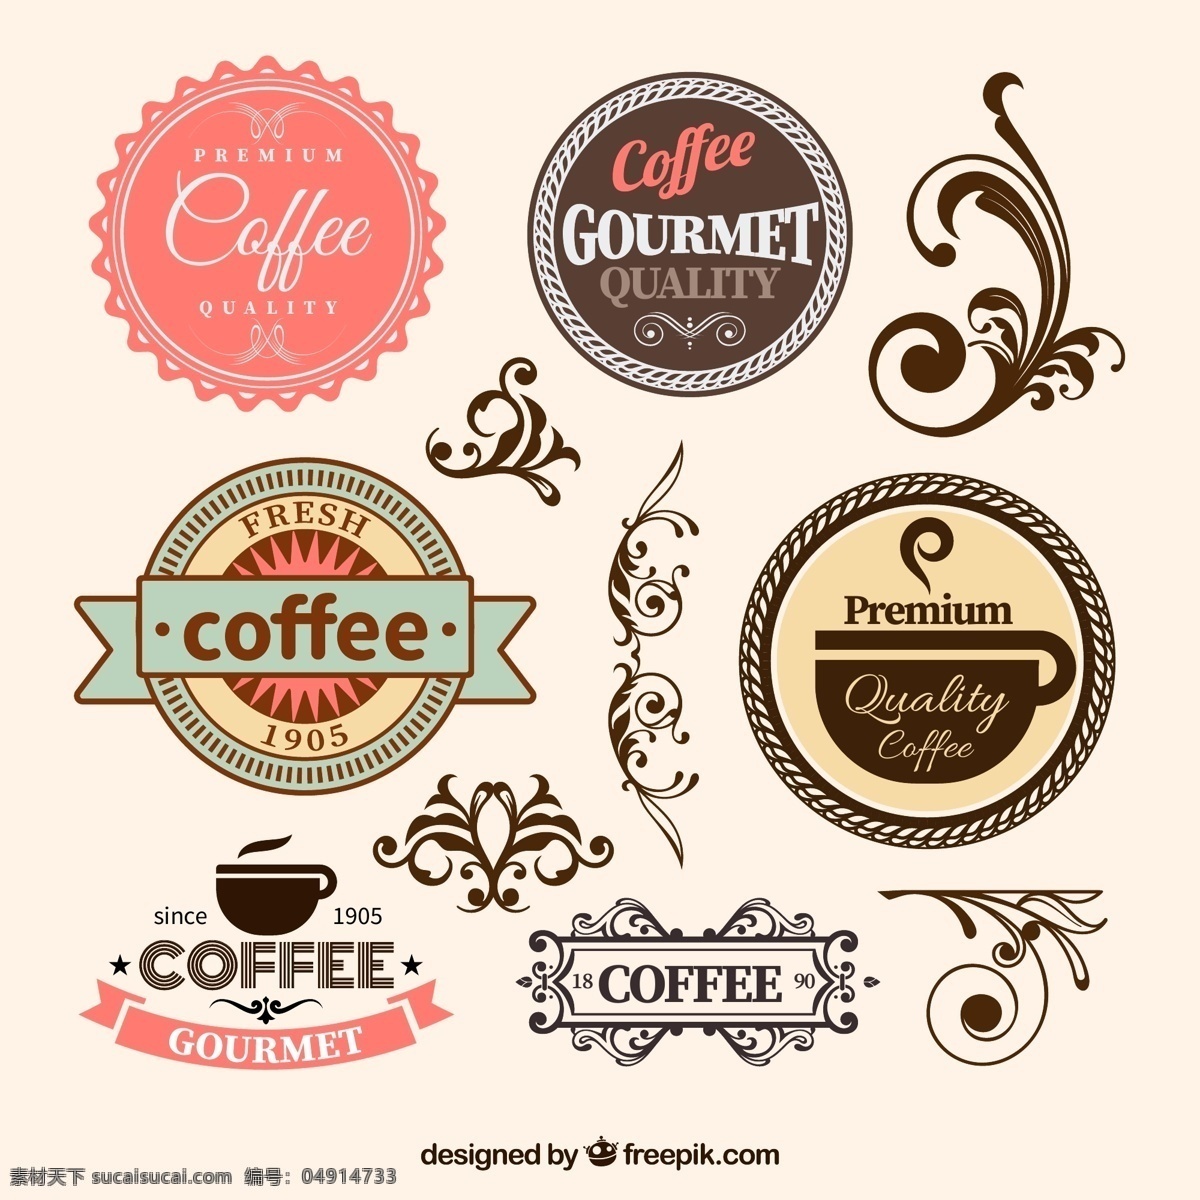 咖啡标签 复古花纹 标签 美食标签 甜品标签 咖啡logo coffee 复古标签 咖啡 欧式标签 标签设计 咖啡杯 咖啡设计 咖啡手绘 咖啡图标 咖啡时间 咖啡豆 咖啡馆 咖啡标志 咖啡店 咖啡元素 咖啡店图标 logo 咖啡商标